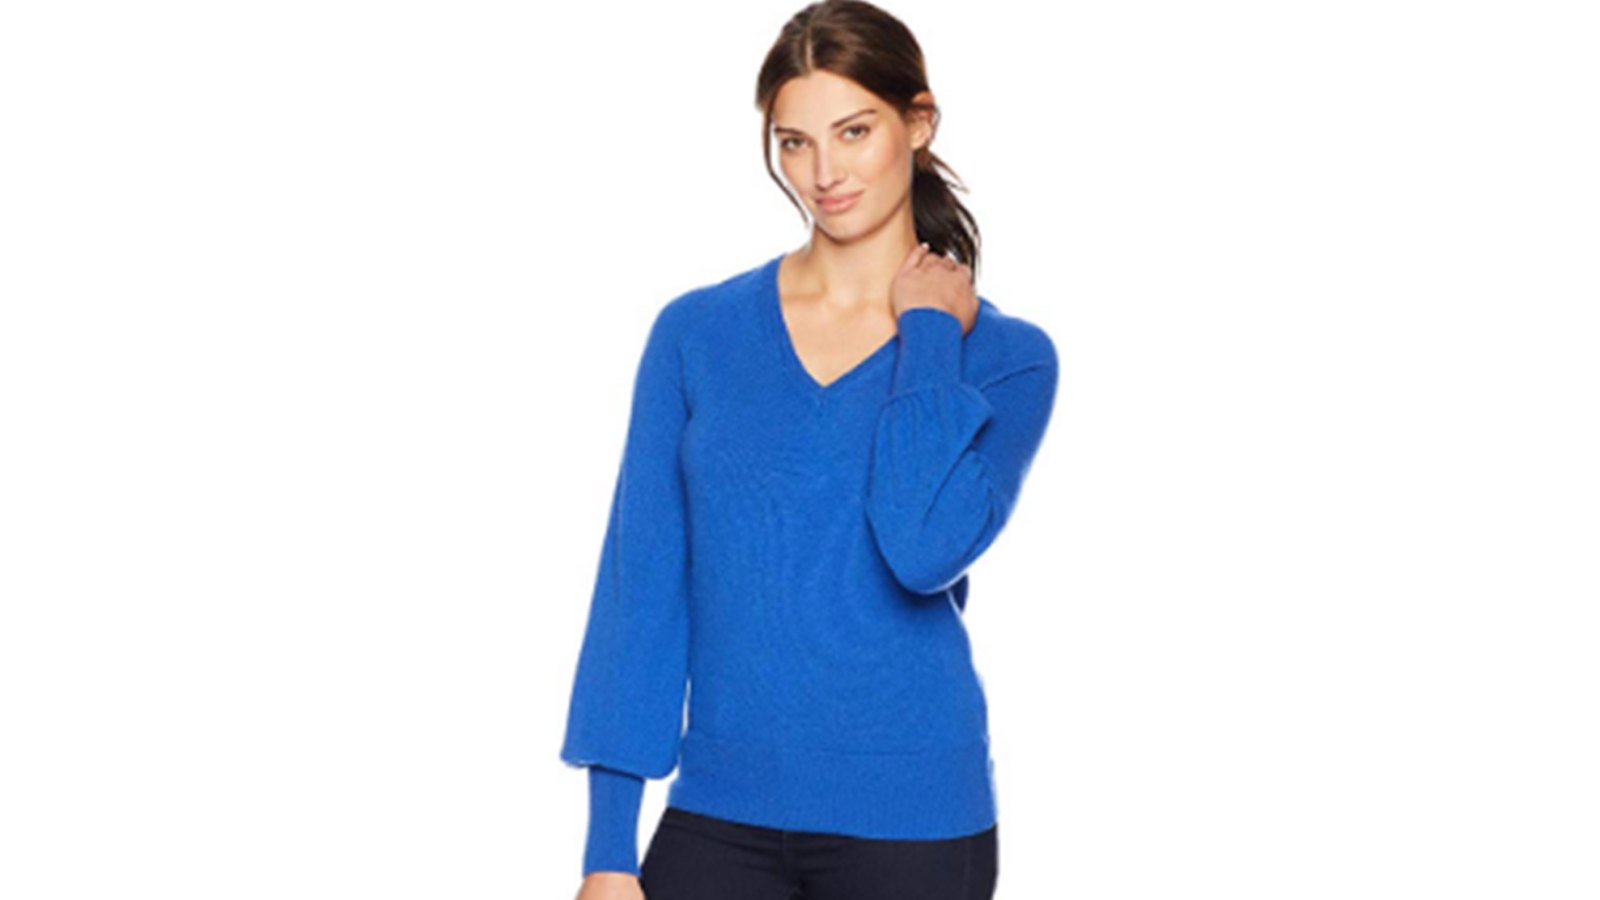 Lark & Ro Women's V-Neck Cashmere Sweater